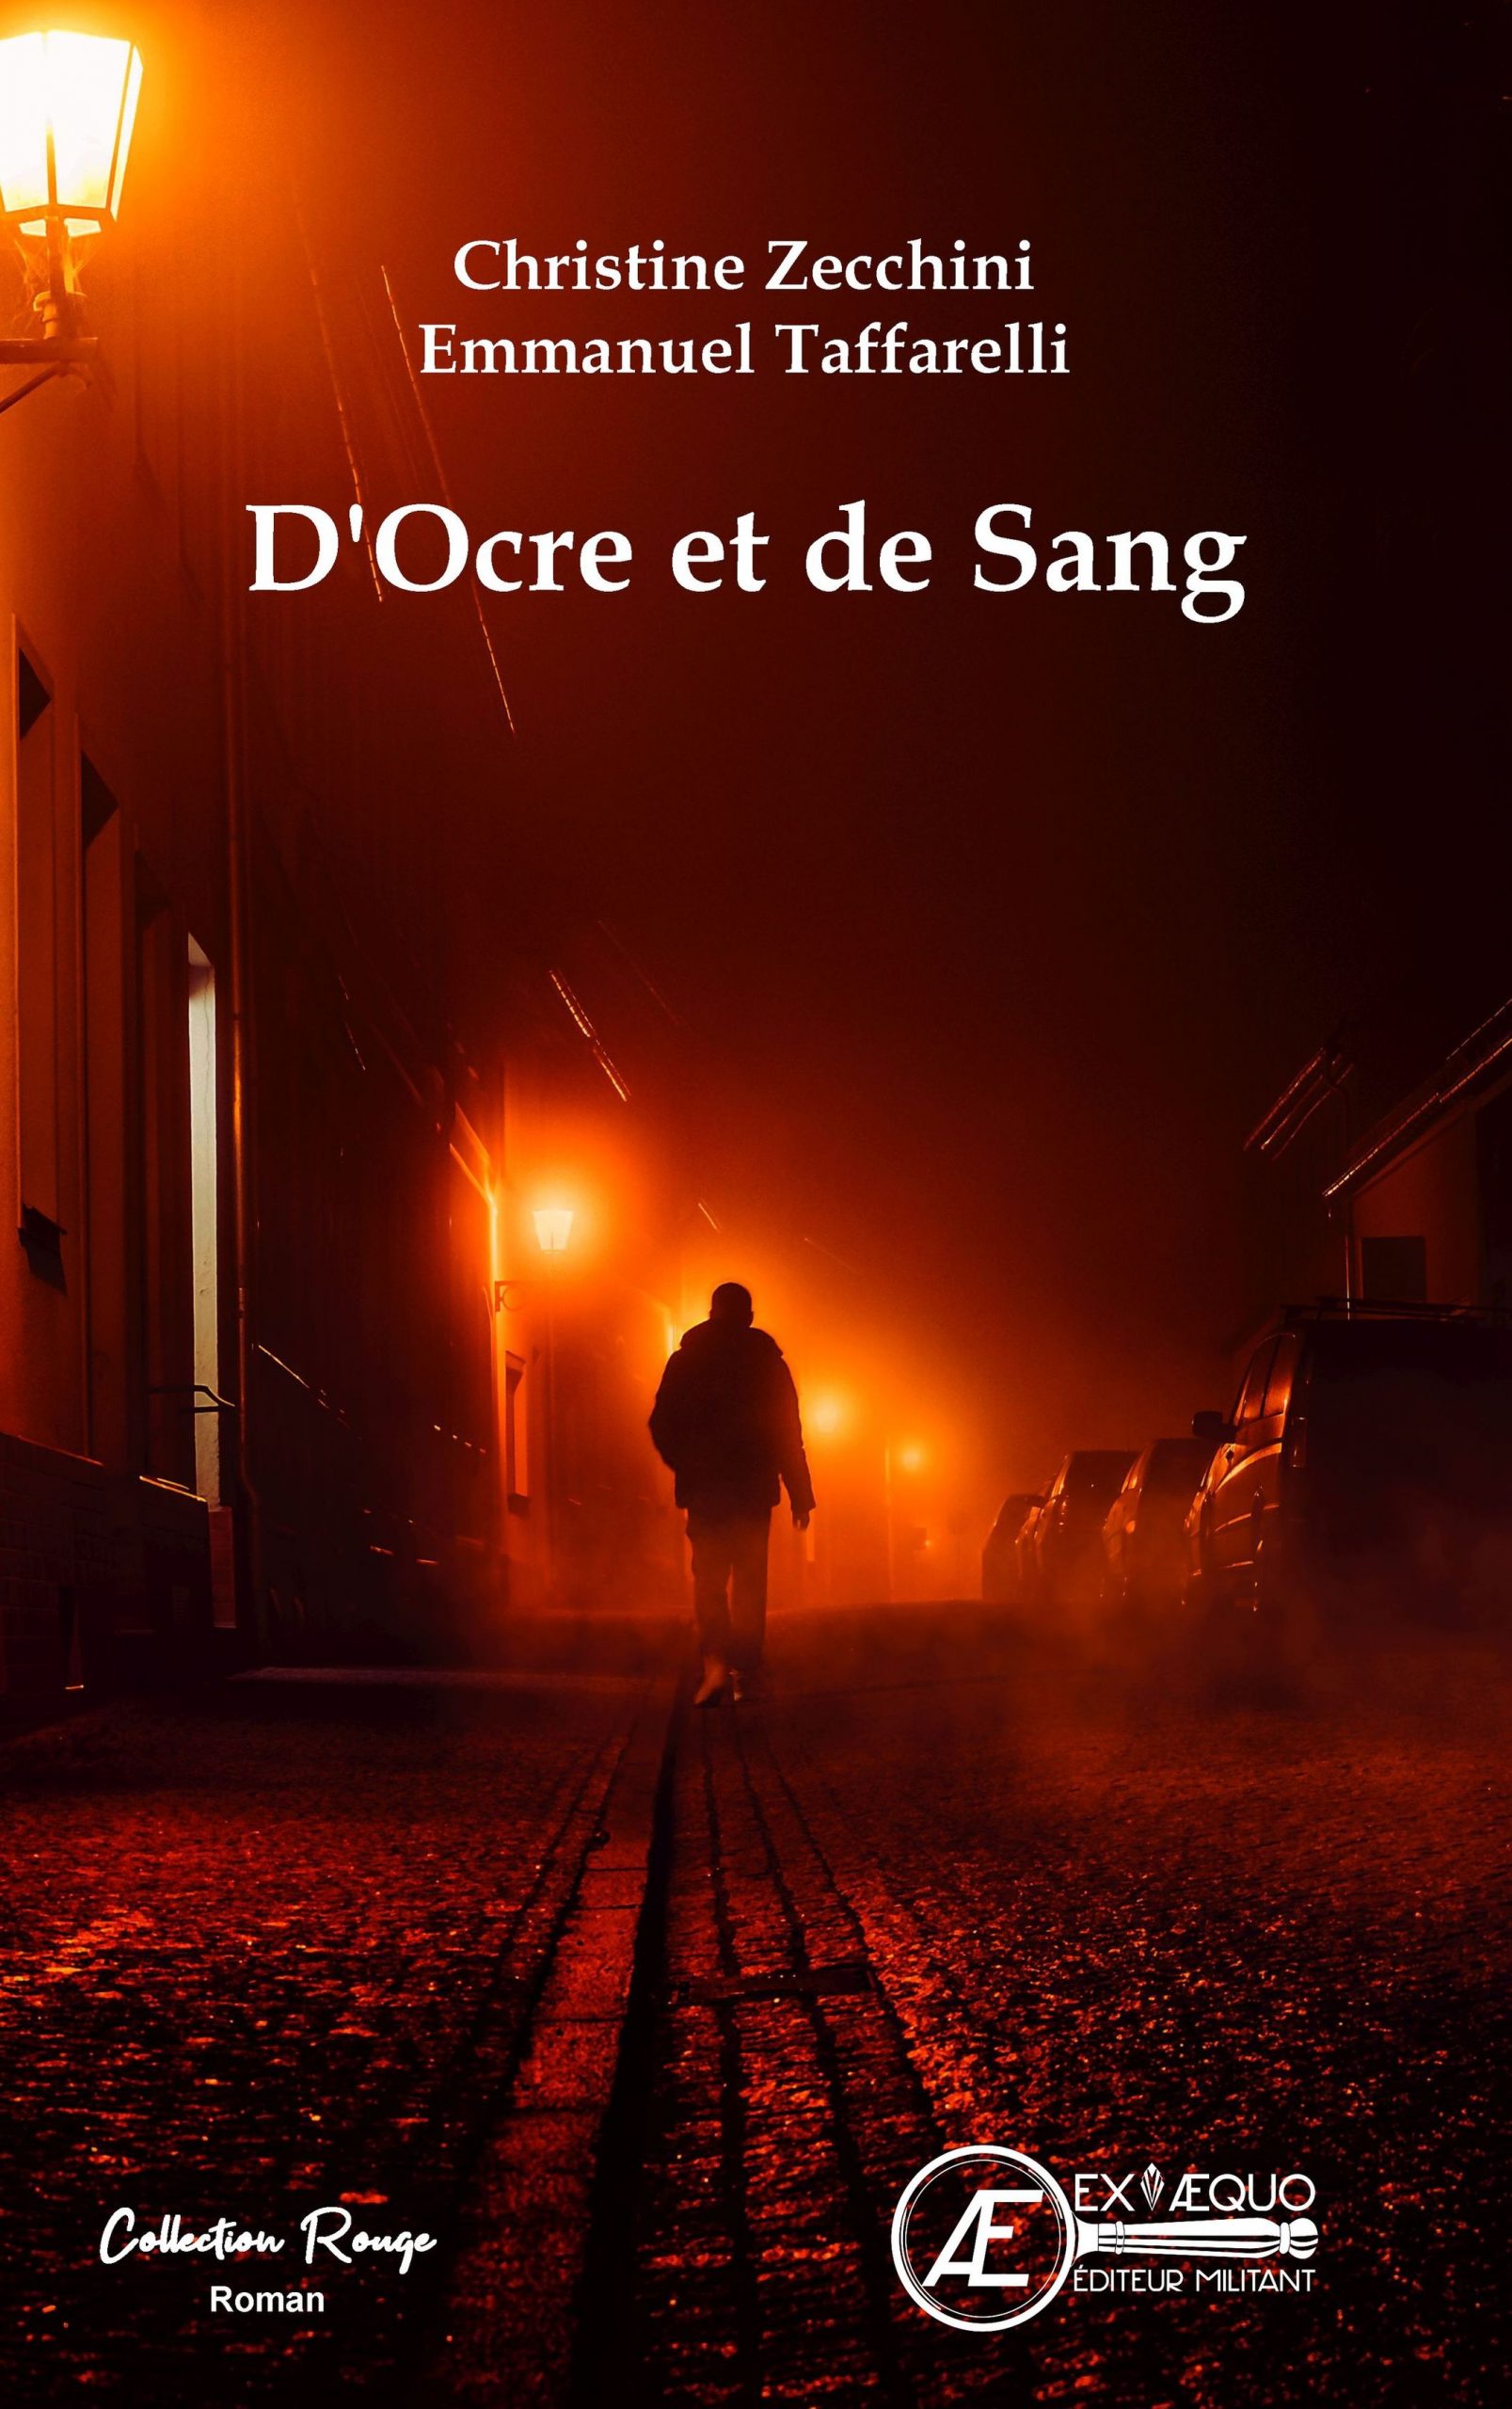 You are currently viewing D’Ocre et de Sang, de Christine Zecchini & Emmanuel Taffarelli